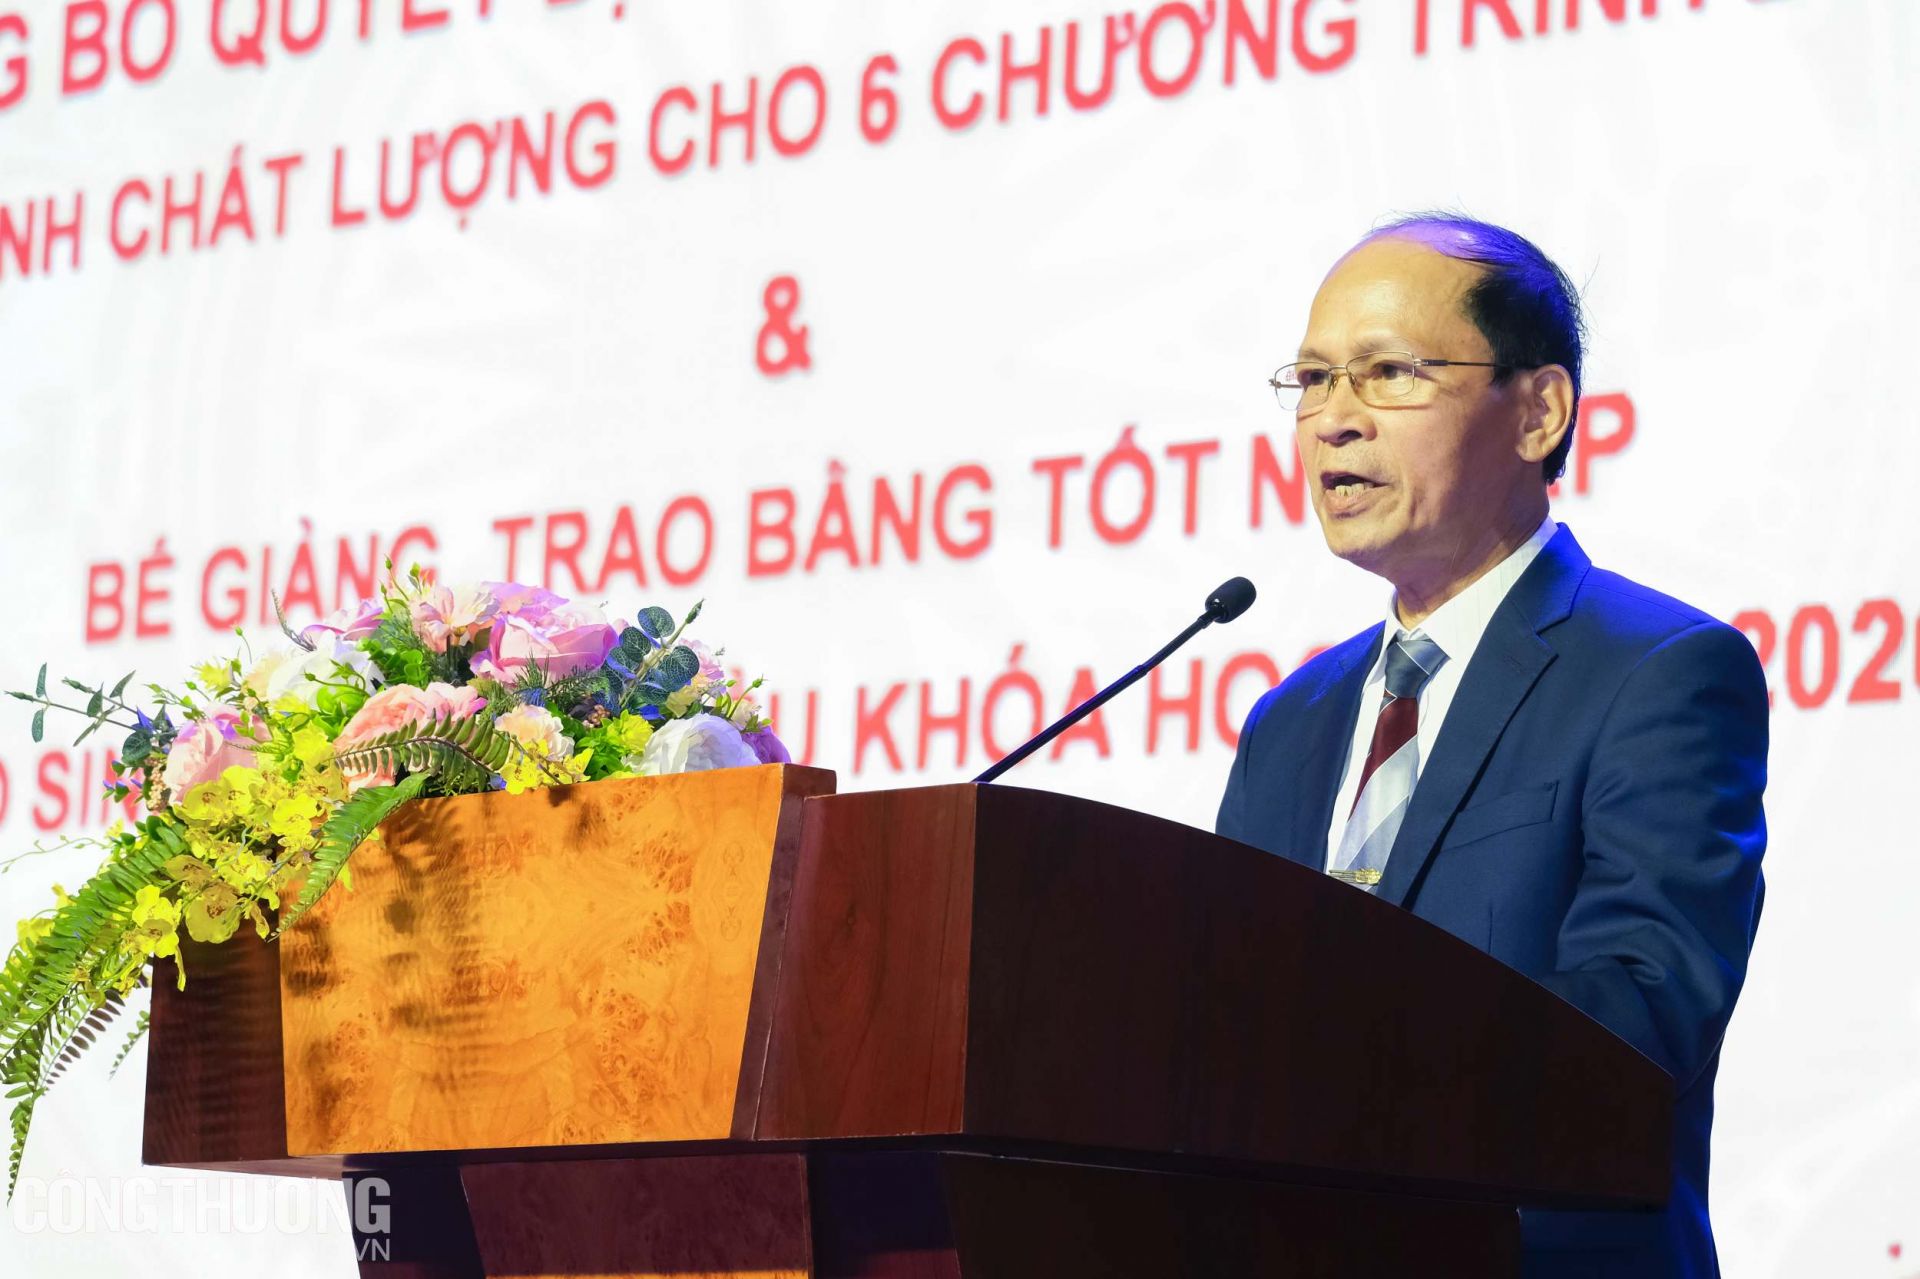 Ông Nguyễn Anh Tuấn - Chánh văn phòng Trung tâm Kiểm định chất lượng giáo dục